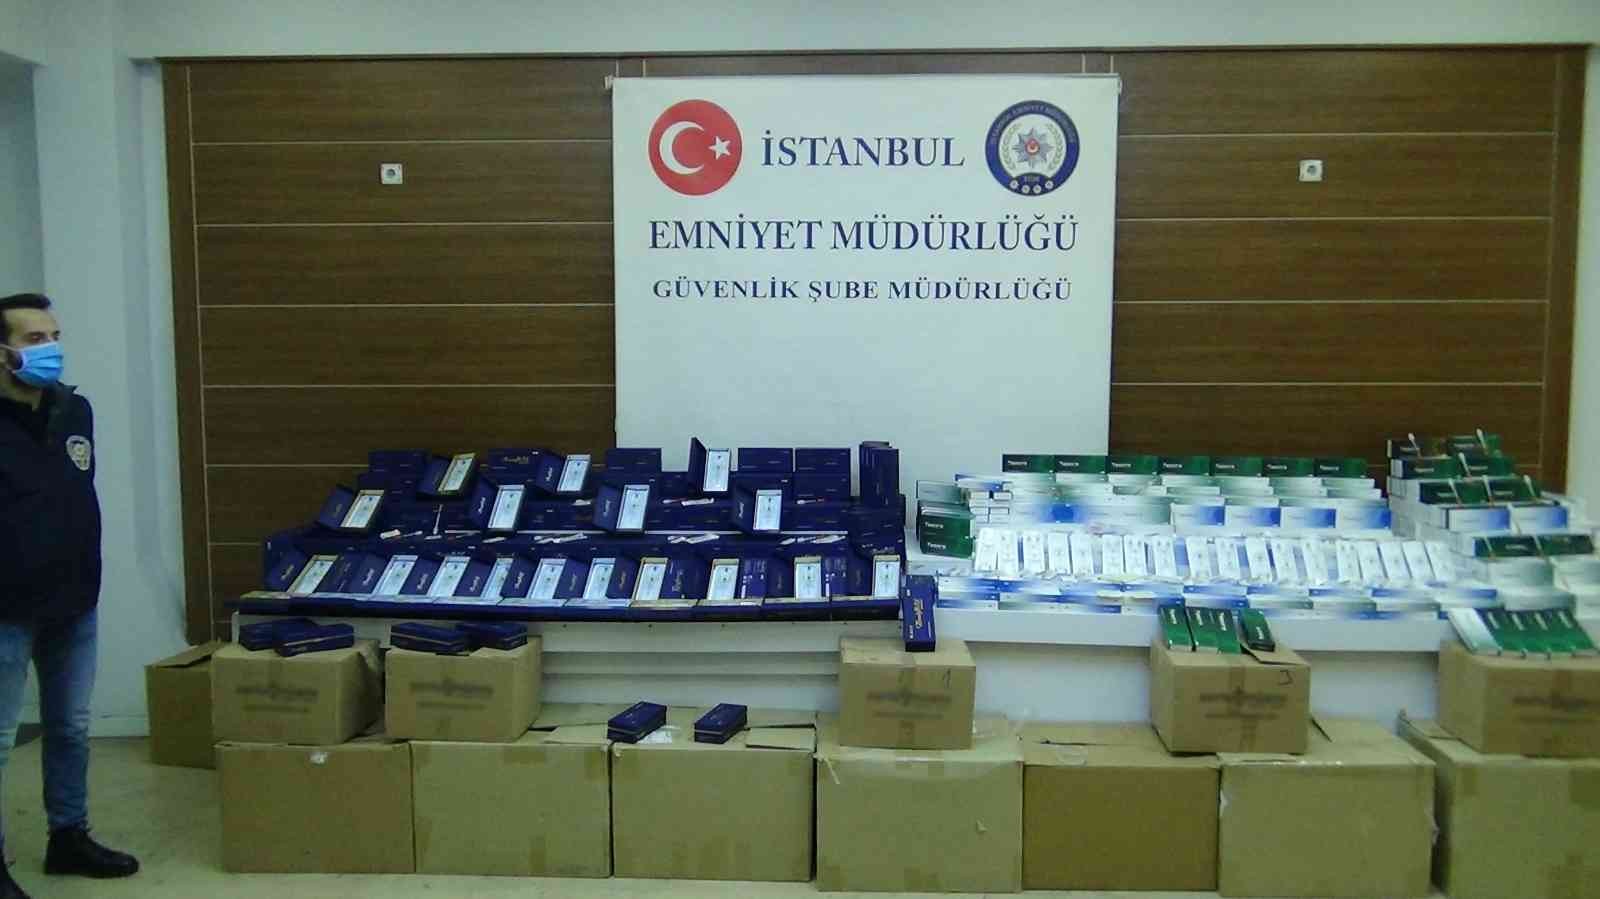 İstanbul’da “botoks” ve “dolgu” malzemesi operasyonu: 1 gözaltı #istanbul